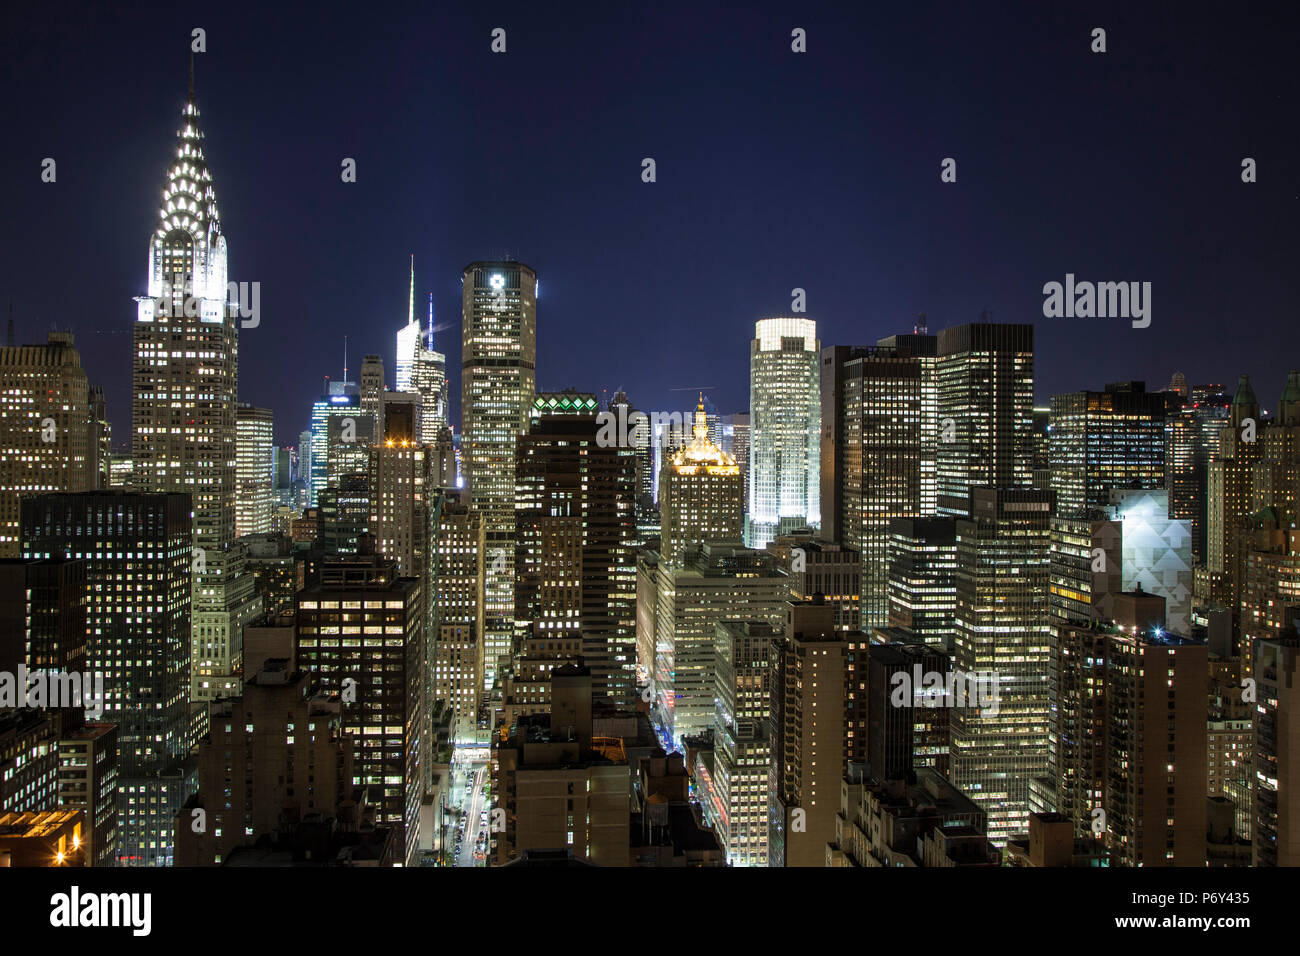 Die Skyline von Midtown mit Chrysler Building und das Empire State Building, Manhattan, New York City, USA Stockfoto